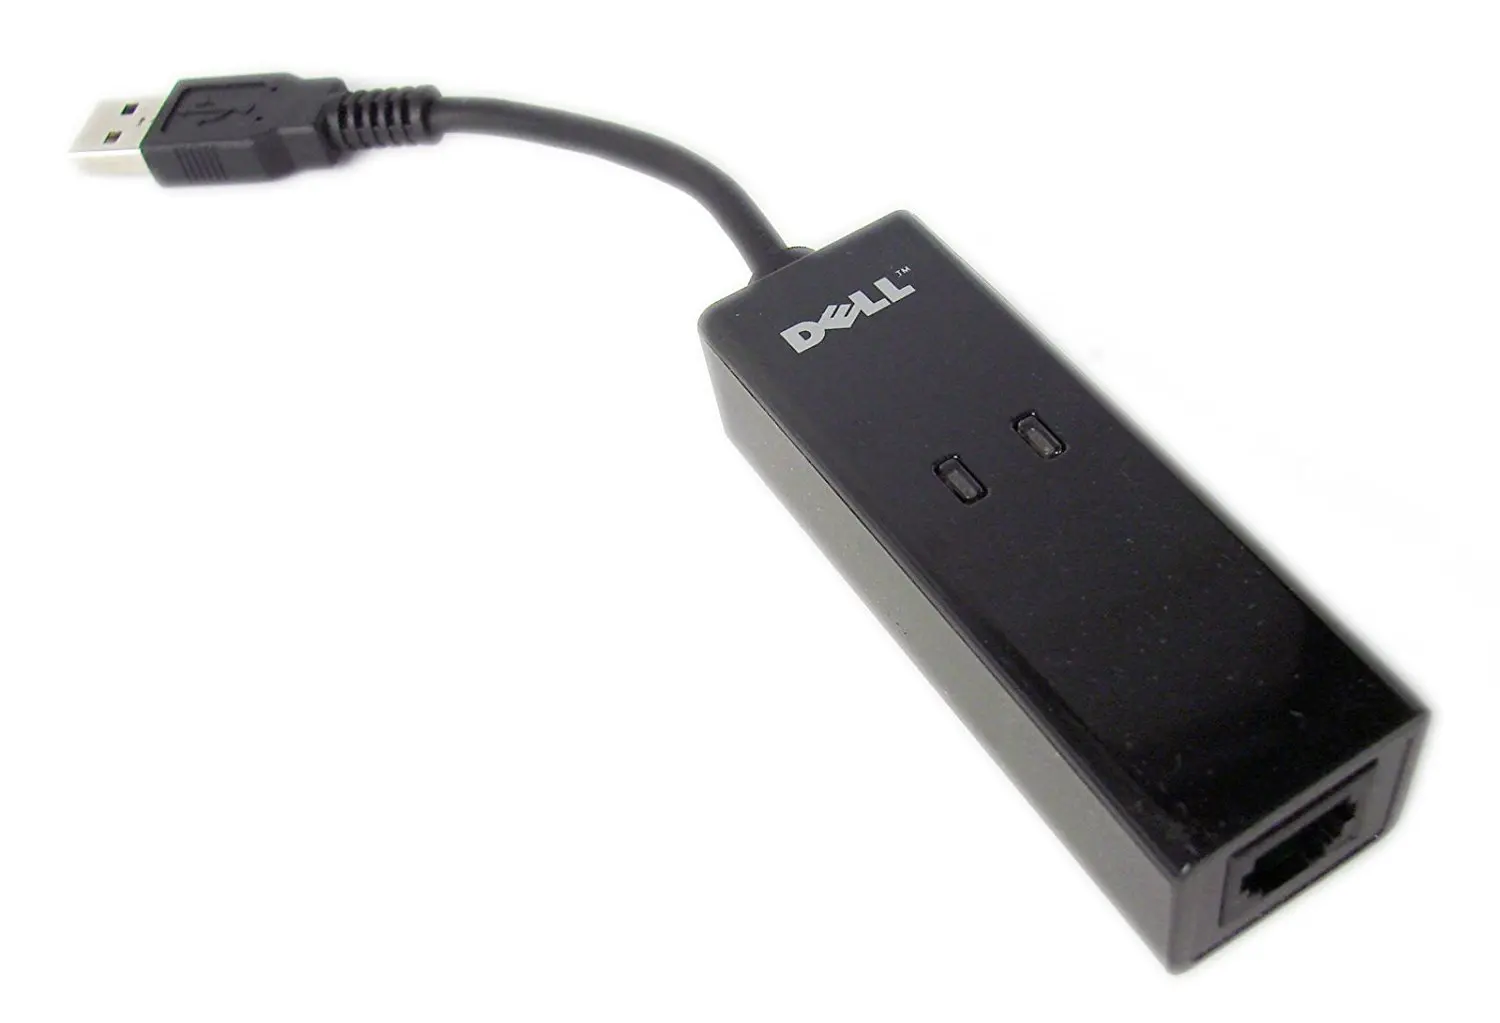 hsp688 modem driver download